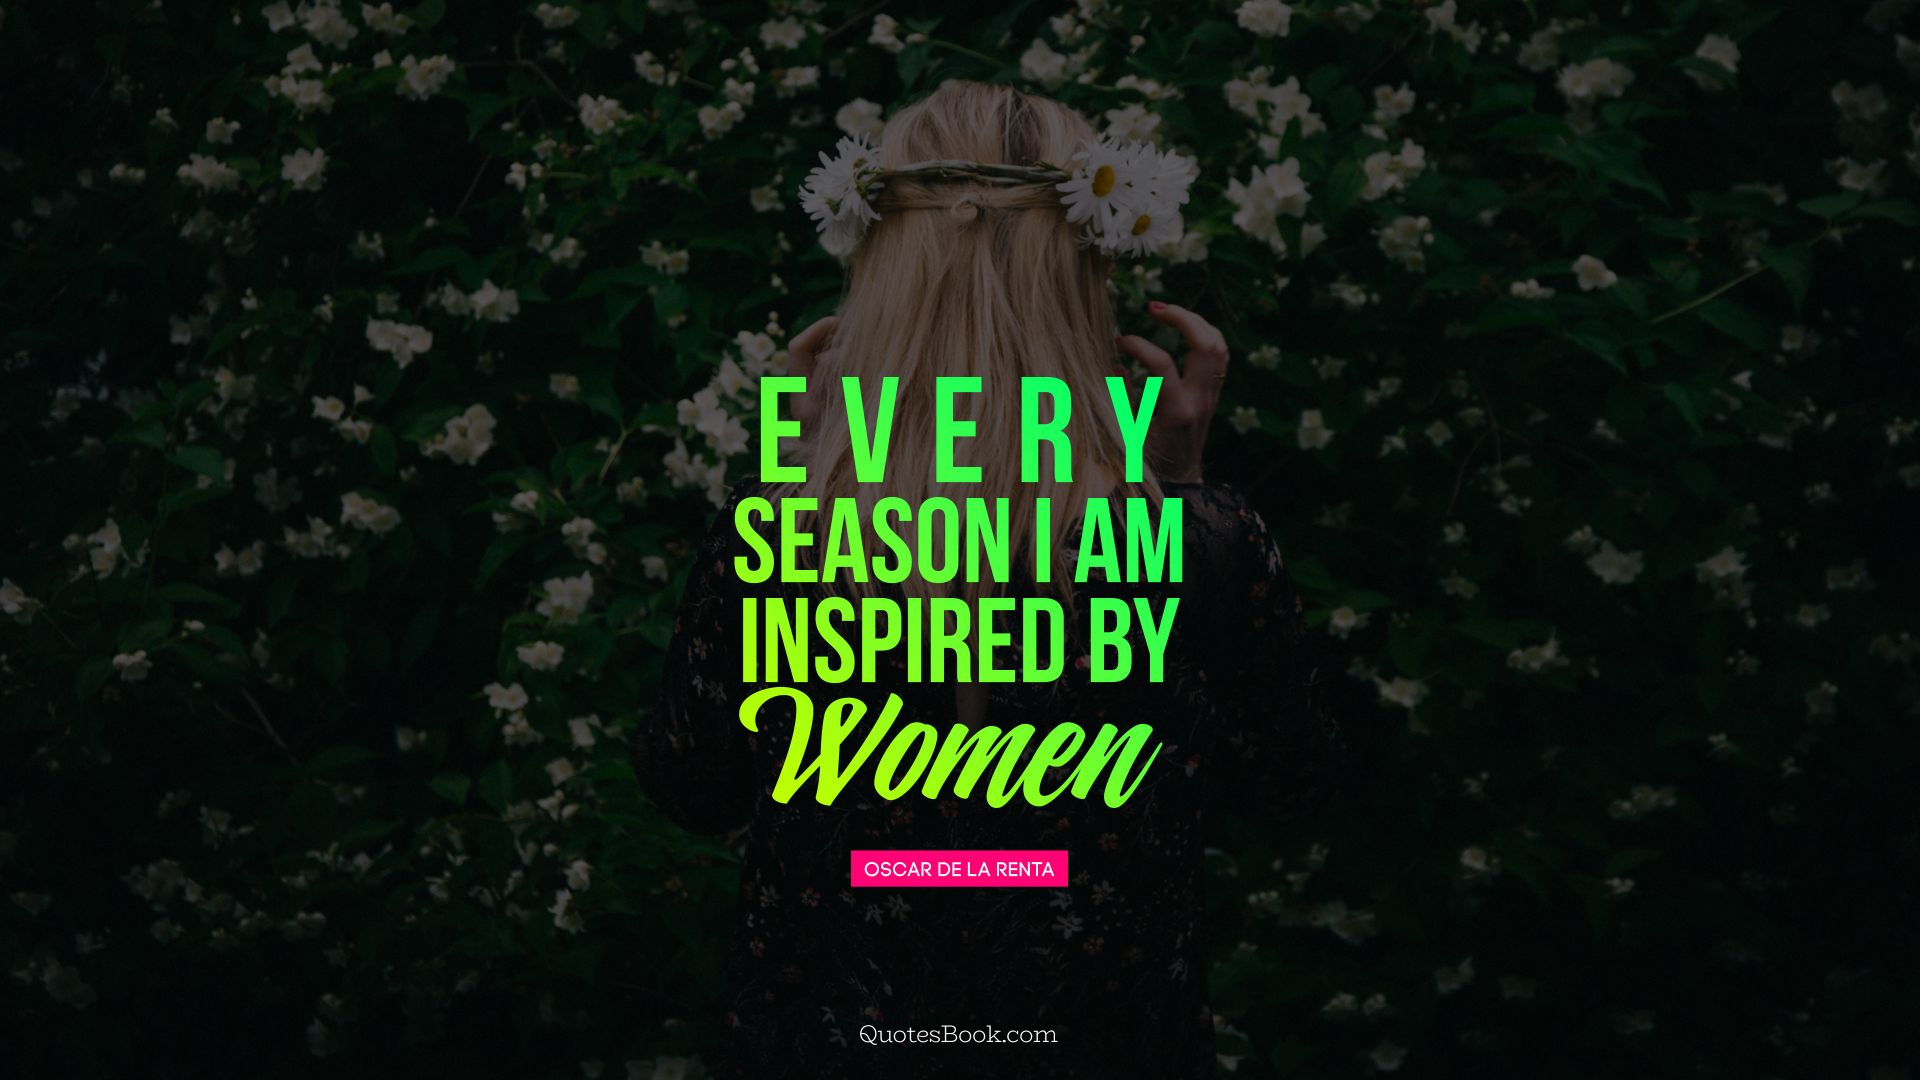 Every season I am inspired by women. - Quote by Oscar de la Renta